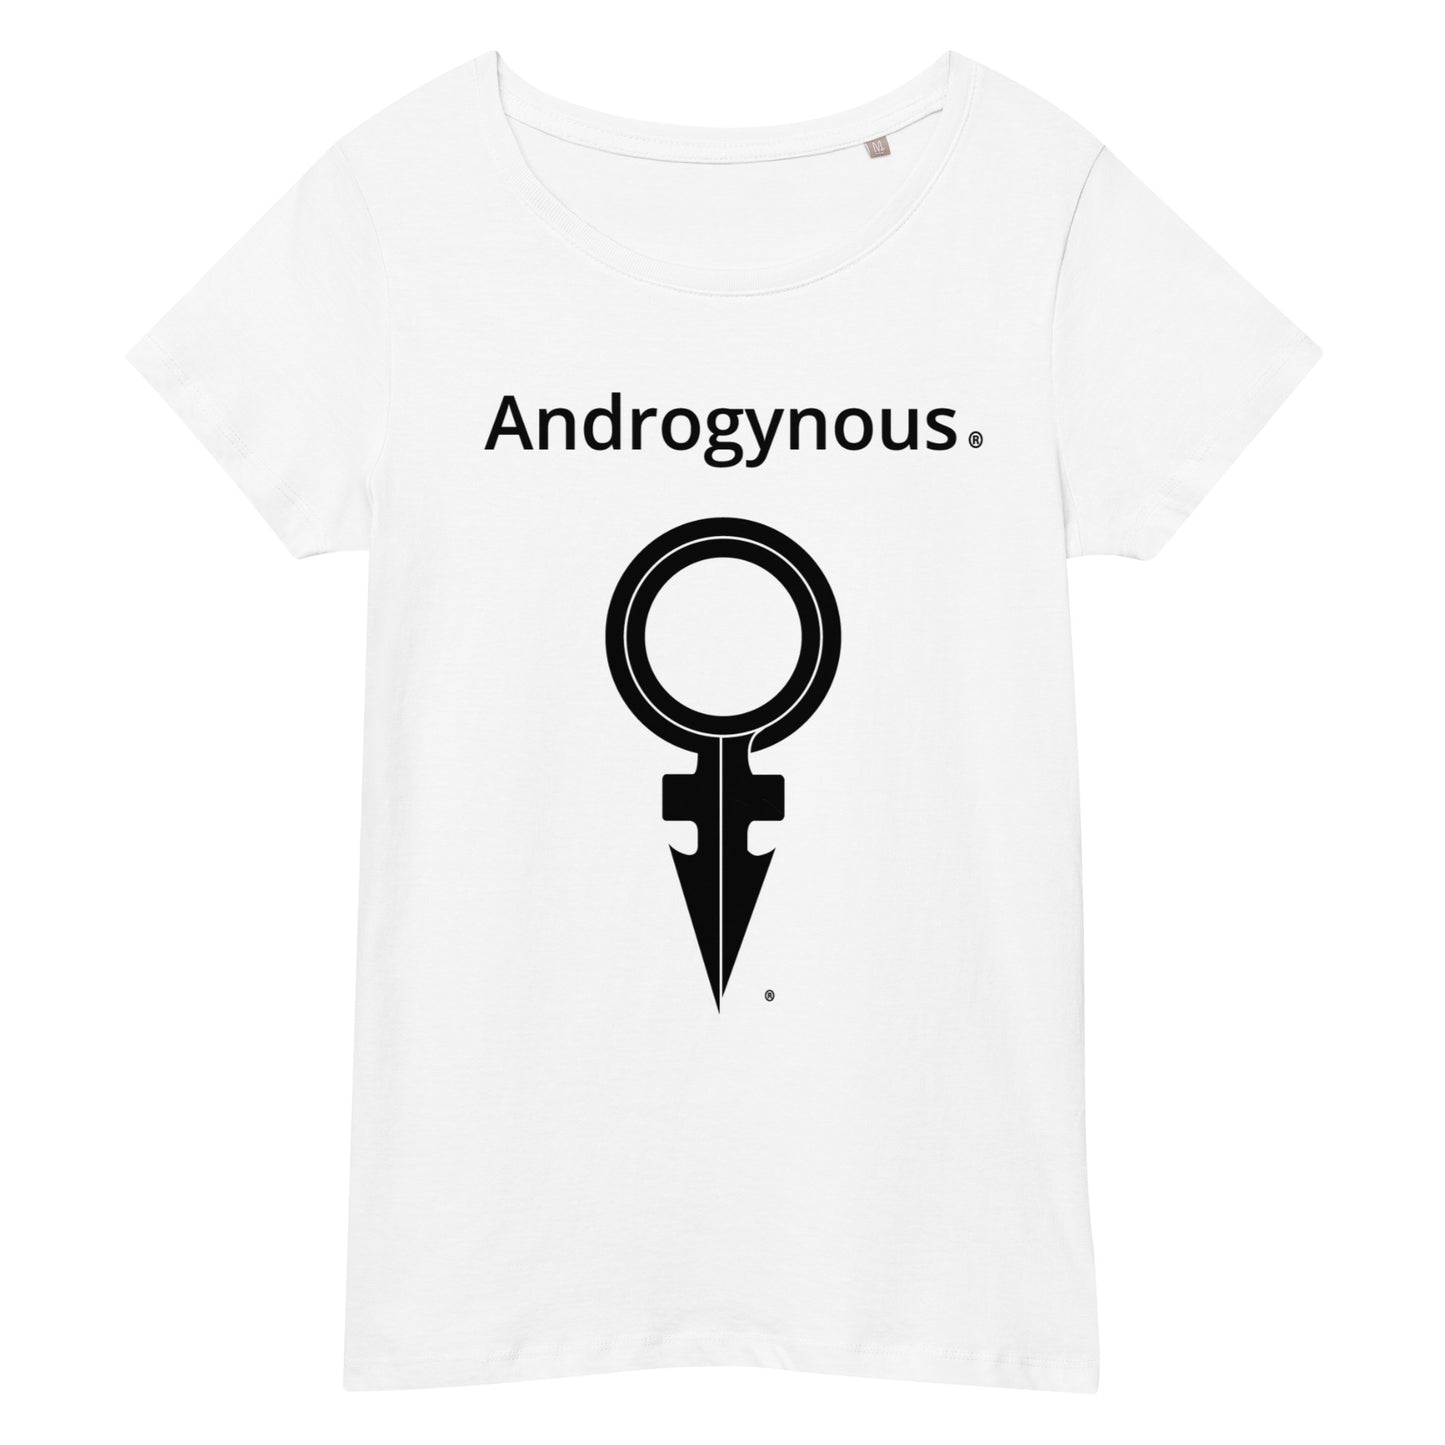 ANDROGYNOUS + SYMBOL BLACK ON WHITE PRINTED RINGSPUN Women’s basic organic t-shirt